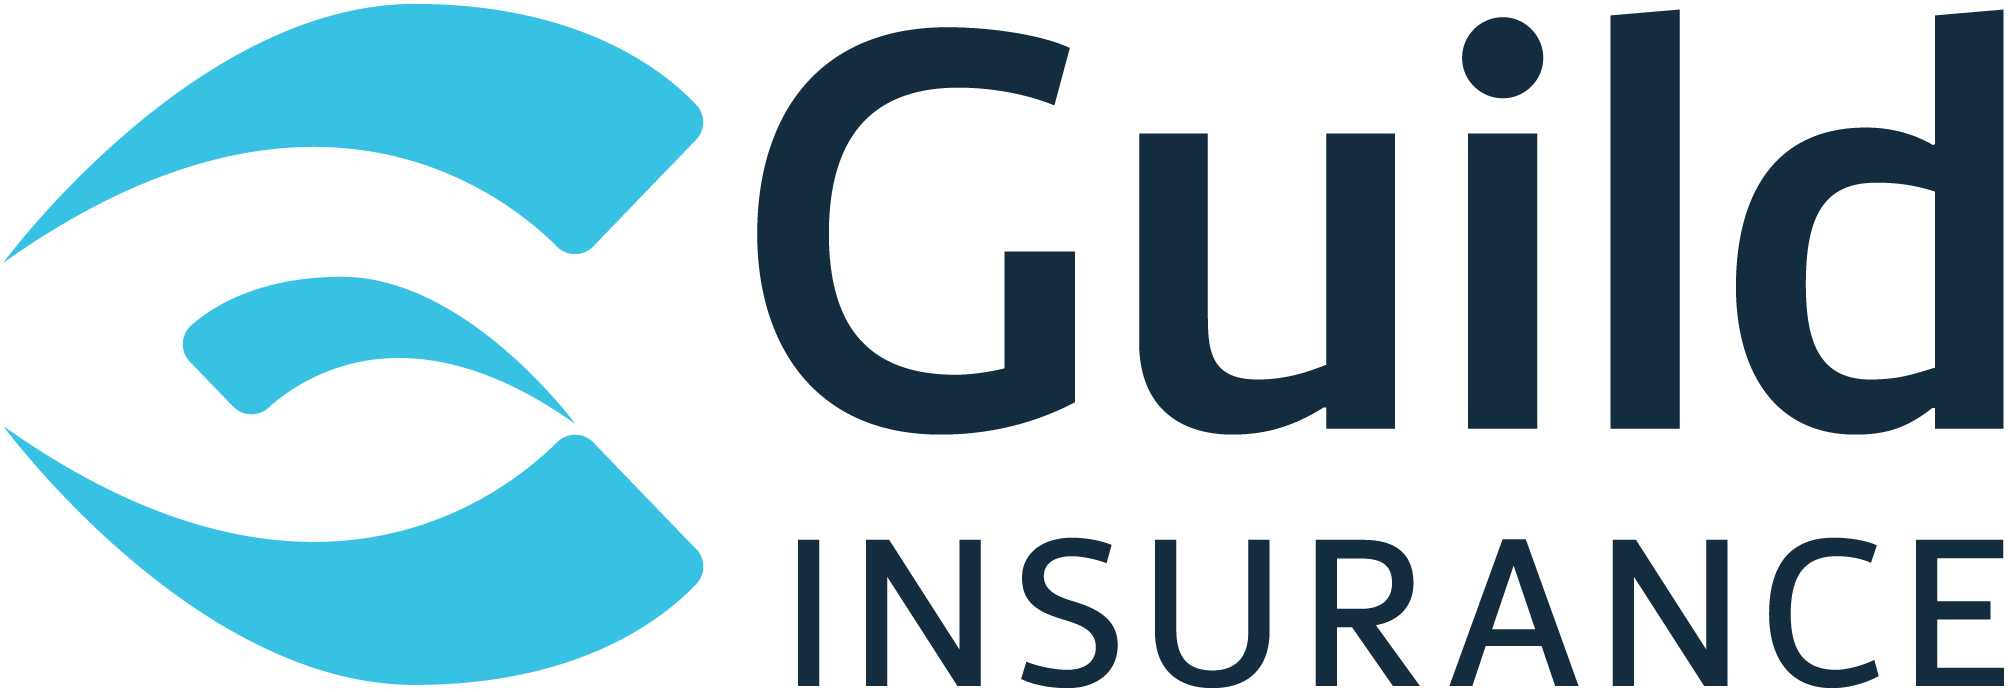 Guild Insurance Logo